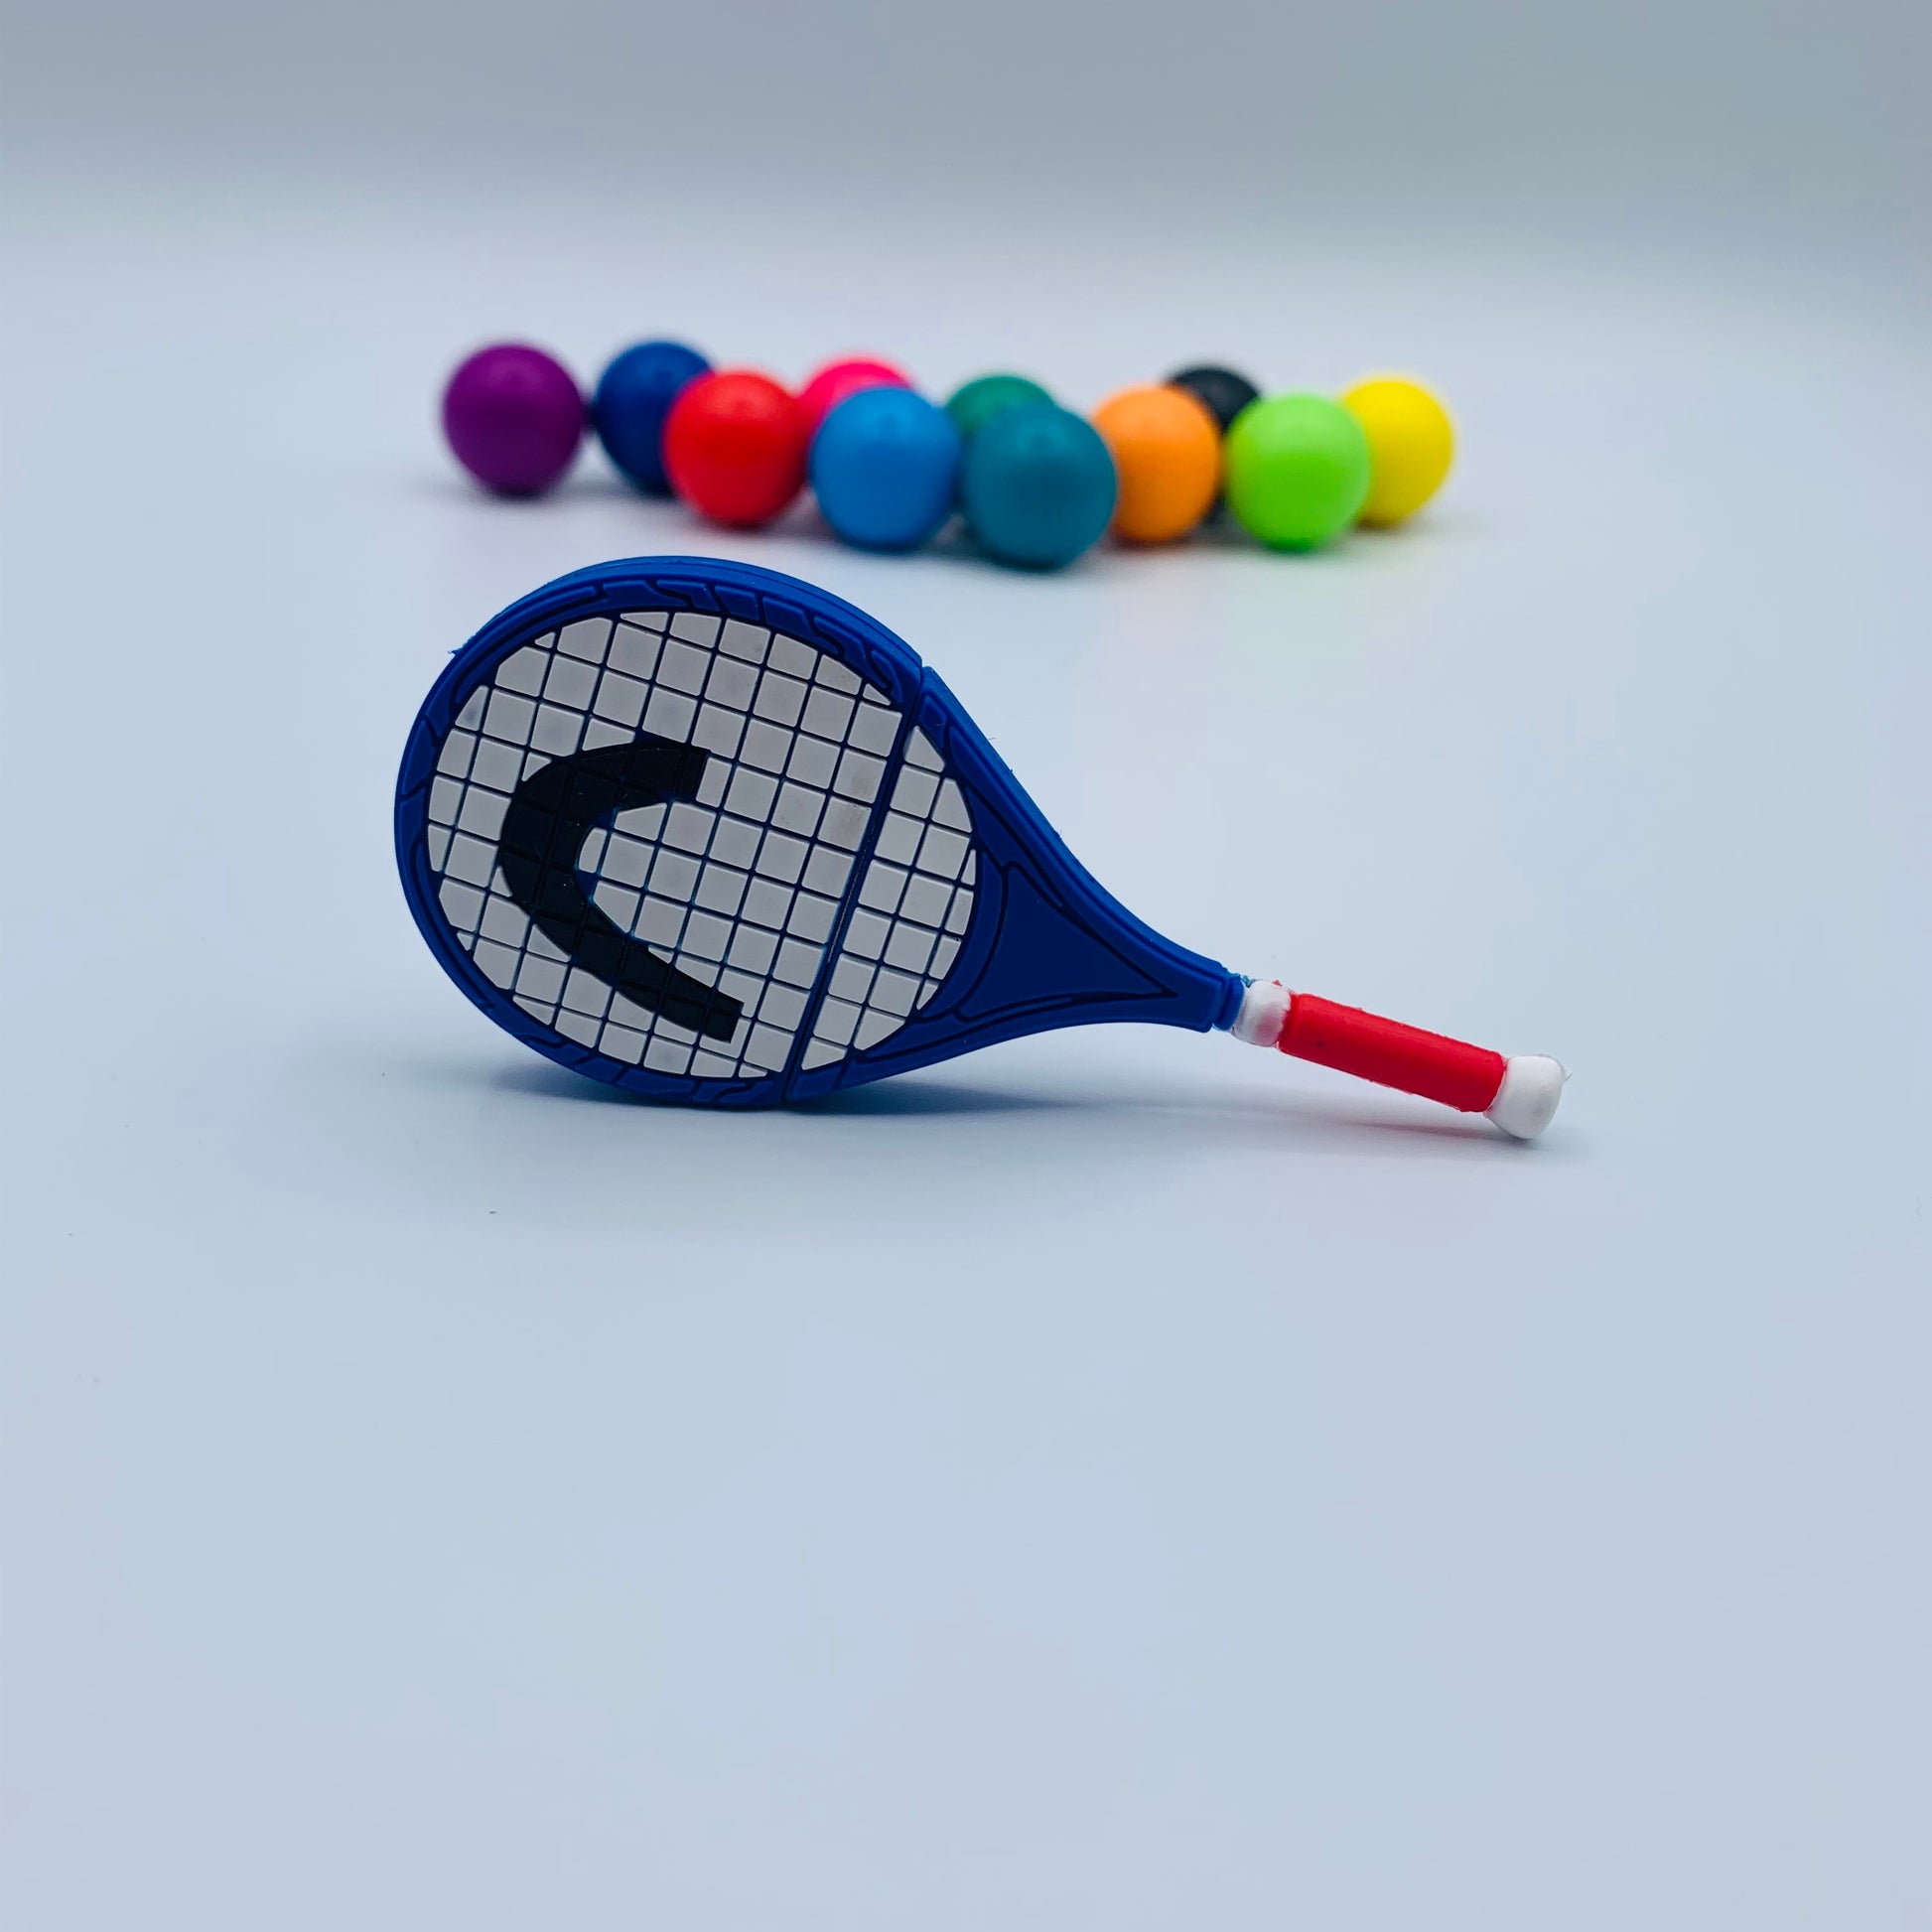 tennis raquet